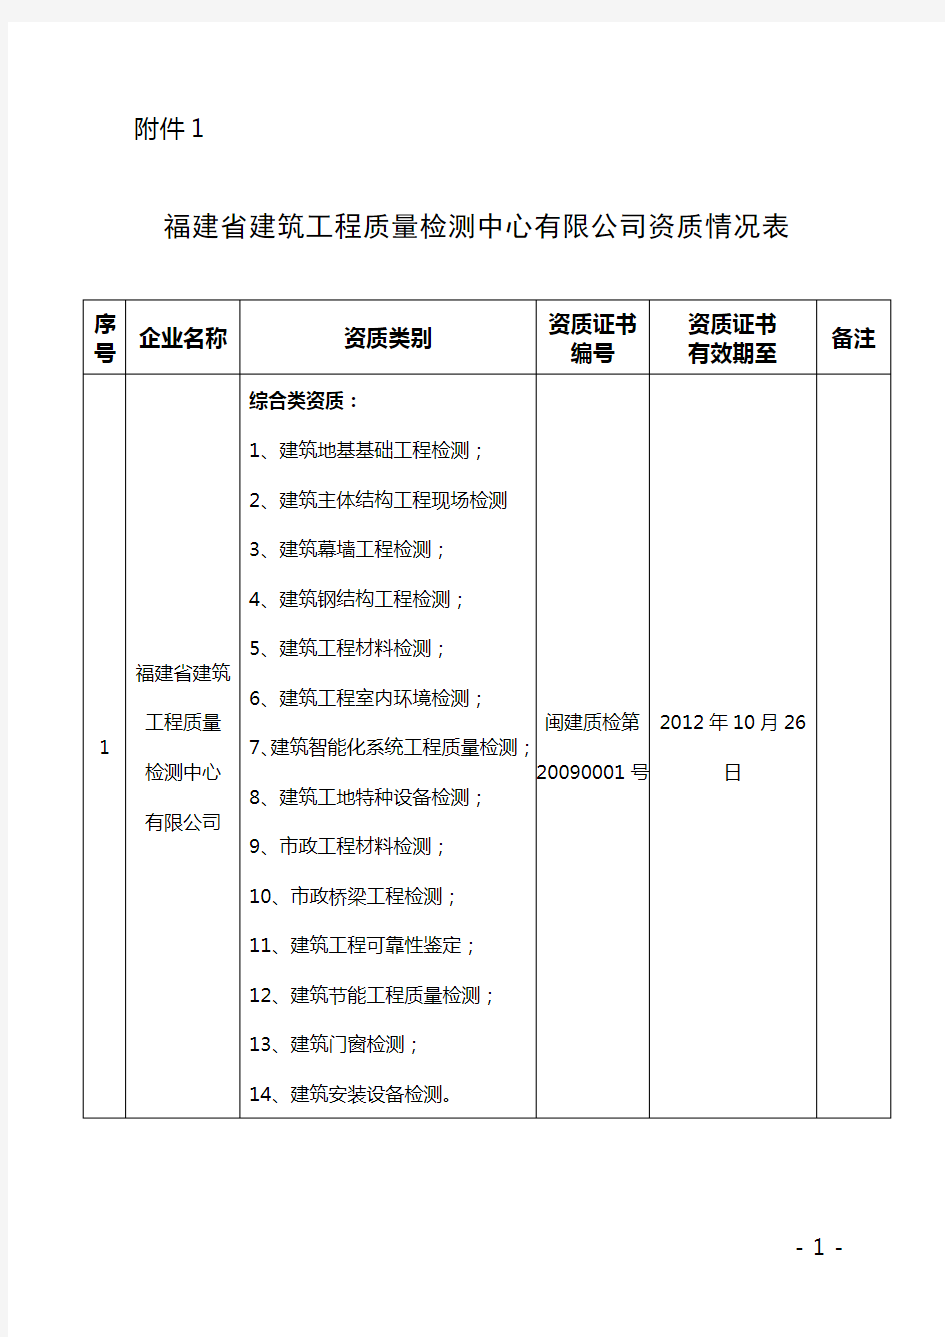 福建省建筑工程质量检测中心有限公司资质情况表